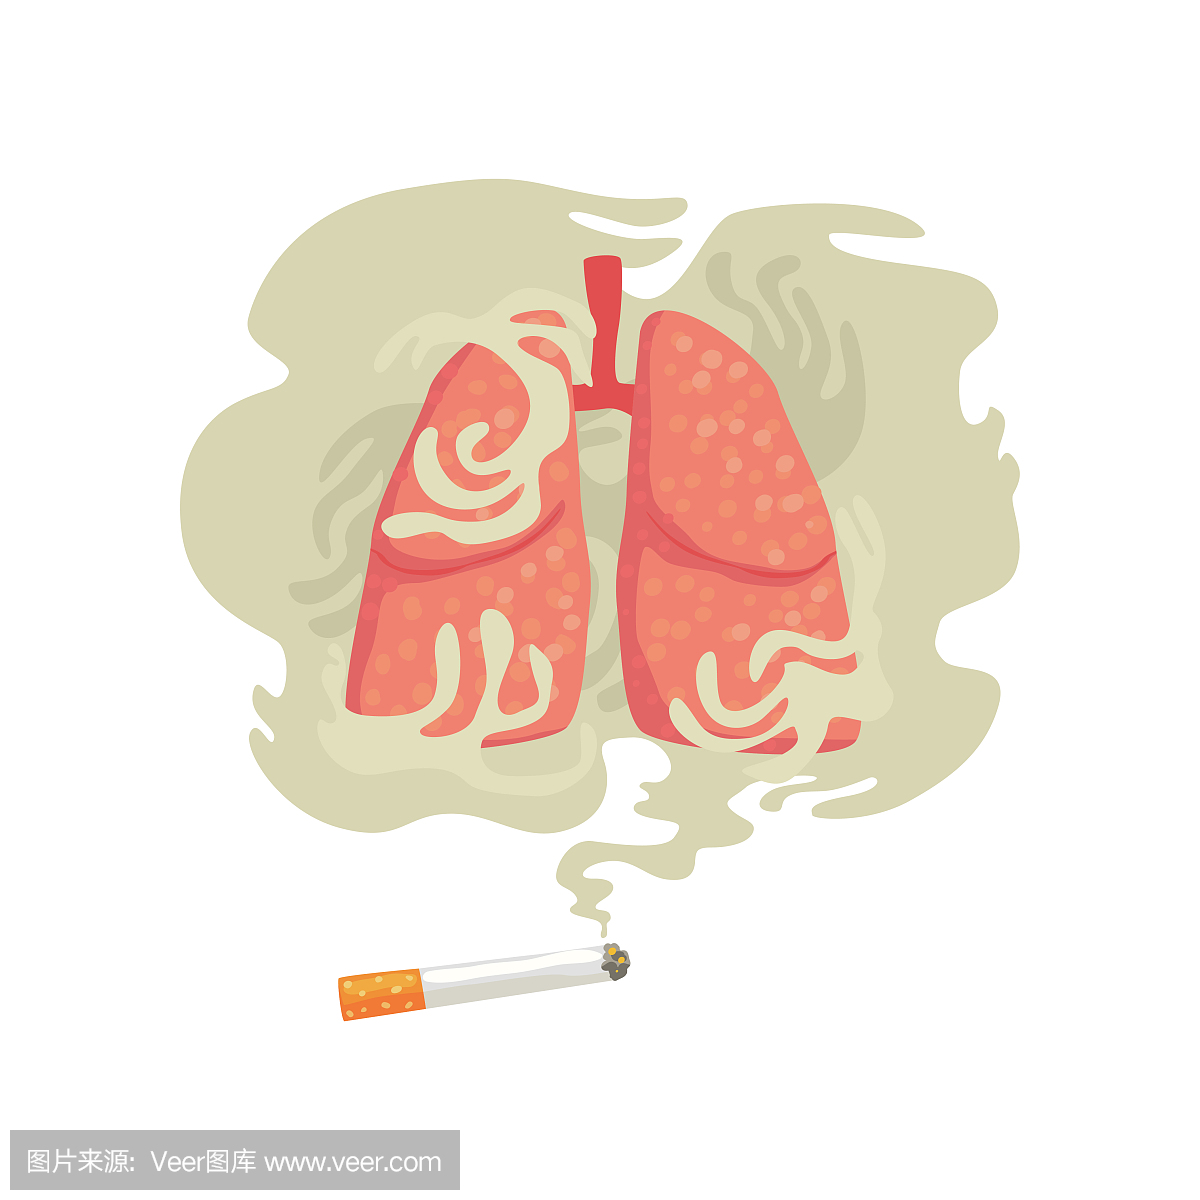 香烟烟雾和肺,坏习惯,吸烟的危害,尼古丁成瘾卡